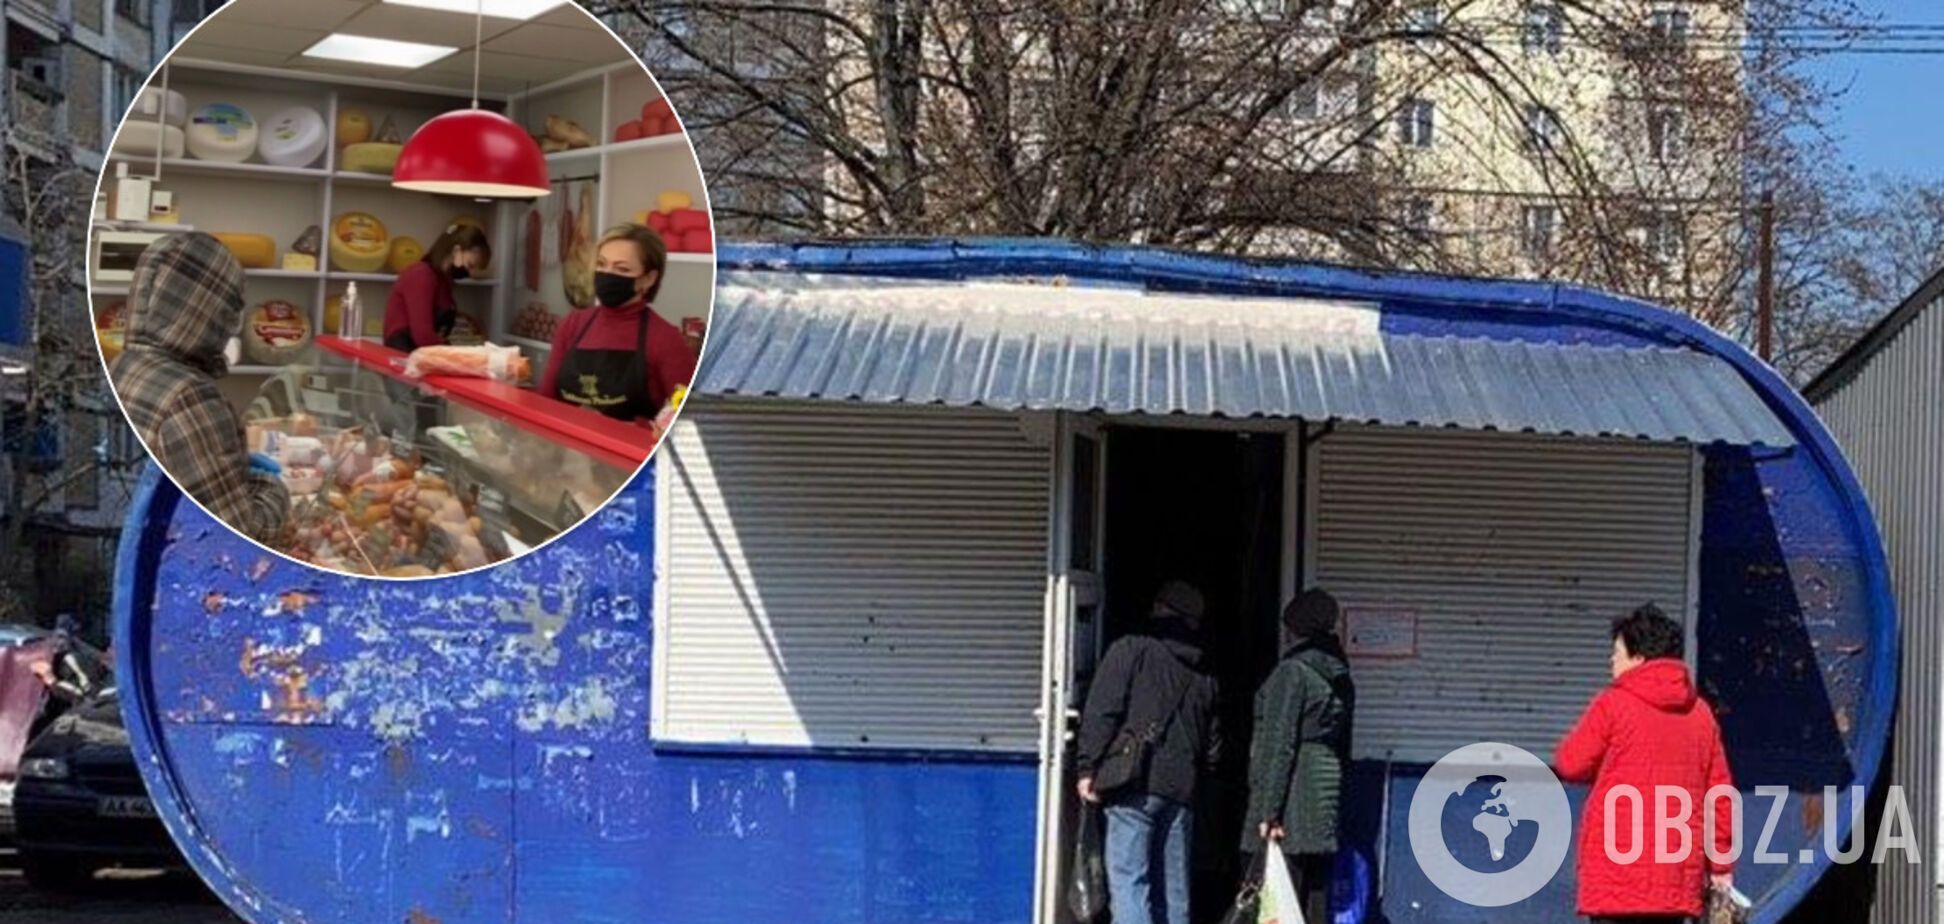 Без масок и по 7 человек в магазине: как в Киеве нарушают карантин. Видео